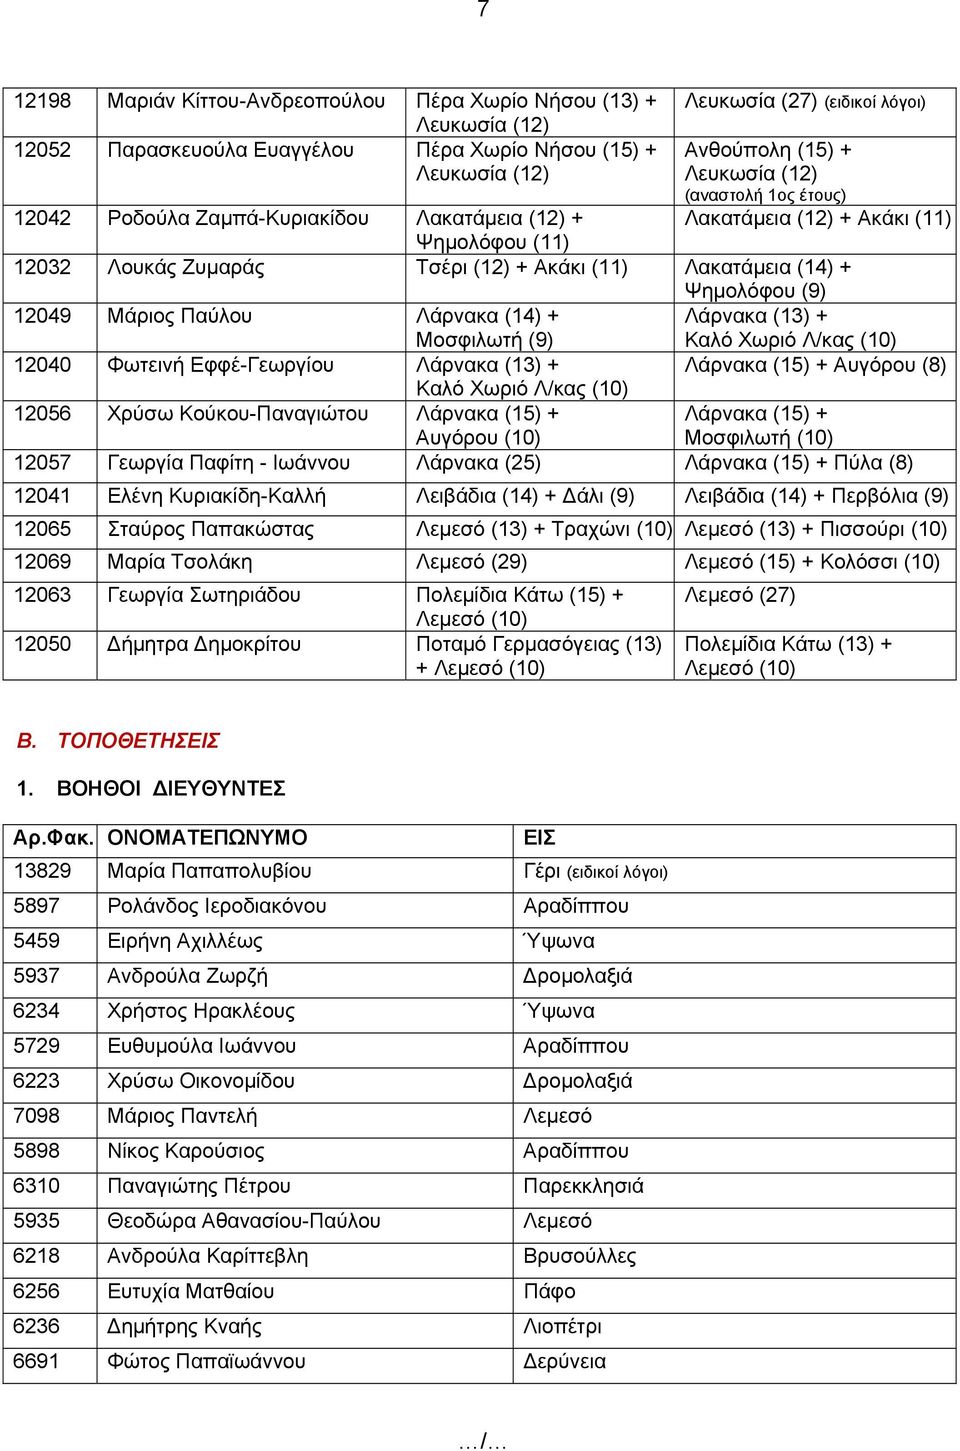 Λάρνακα (14) + Λάρνακα (13) + Μοσφιλωτή (9) Καλό Χωριό Λ/κας (10) 12040 Φωτεινή Εφφέ-Γεωργίου Λάρνακα (13) + Λάρνακα (15) + Αυγόρου (8) Καλό Χωριό Λ/κας (10) 12056 Χρύσω Κούκου-Παναγιώτου Λάρνακα